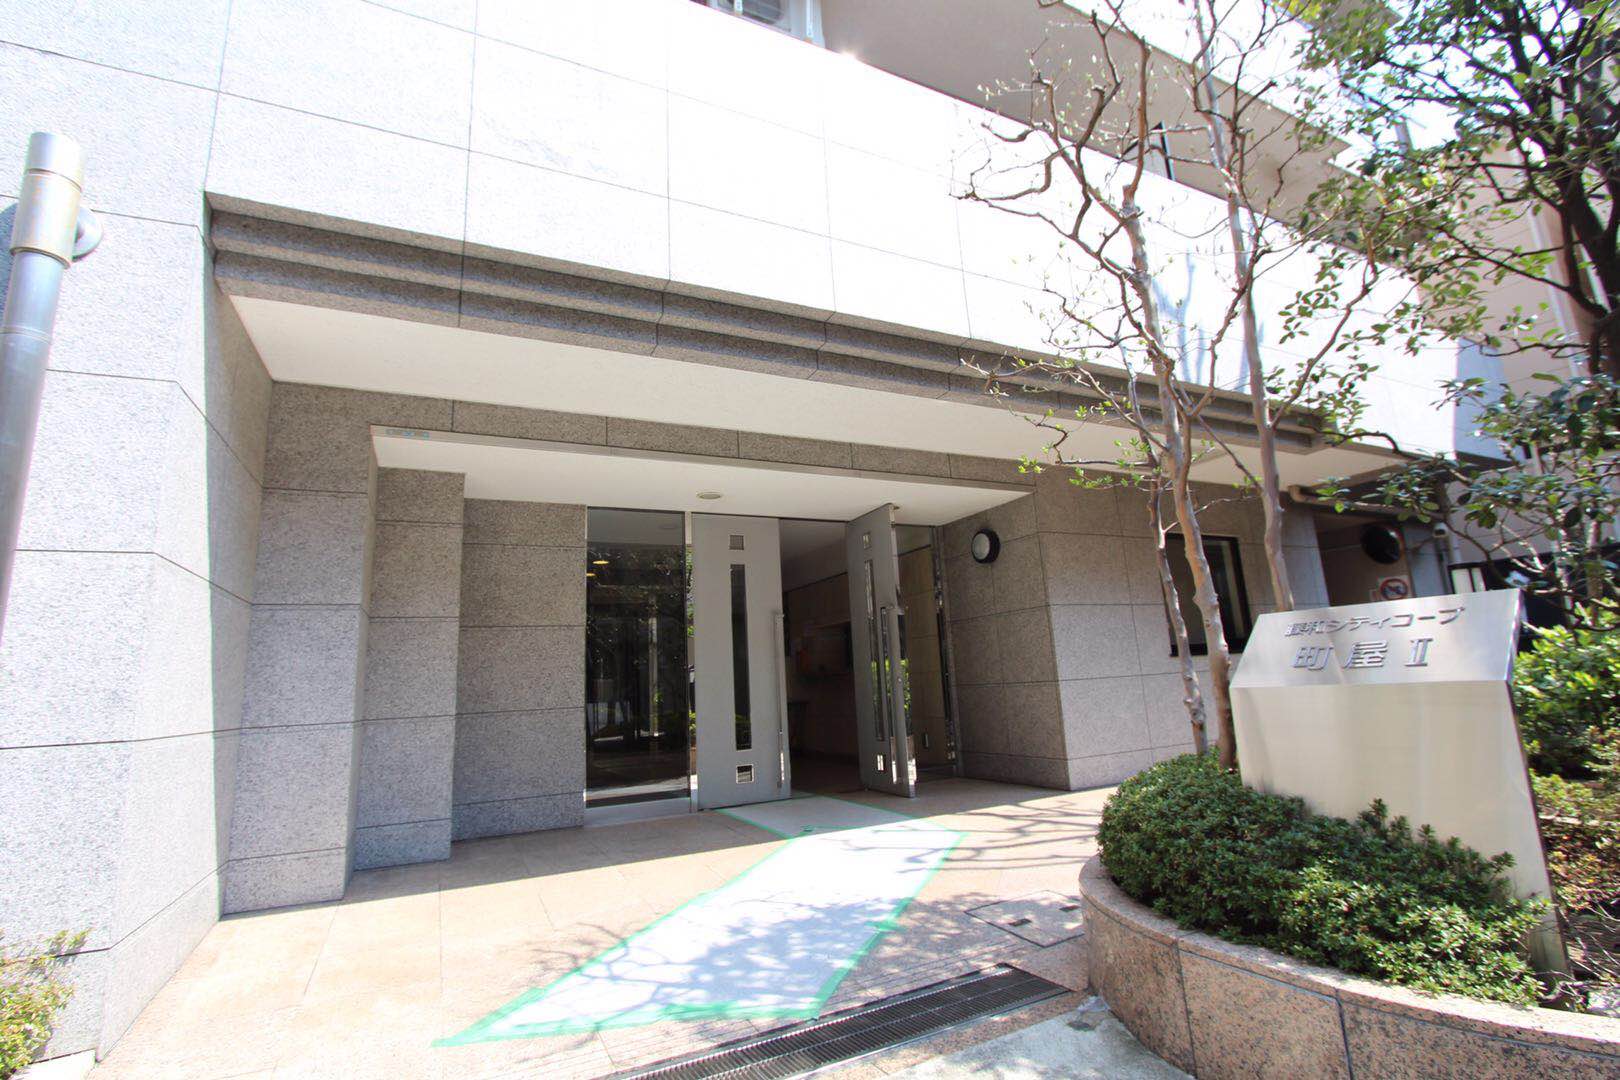 東京商業地域  前舖後居複式位  近1300呎只售約HK$400萬!